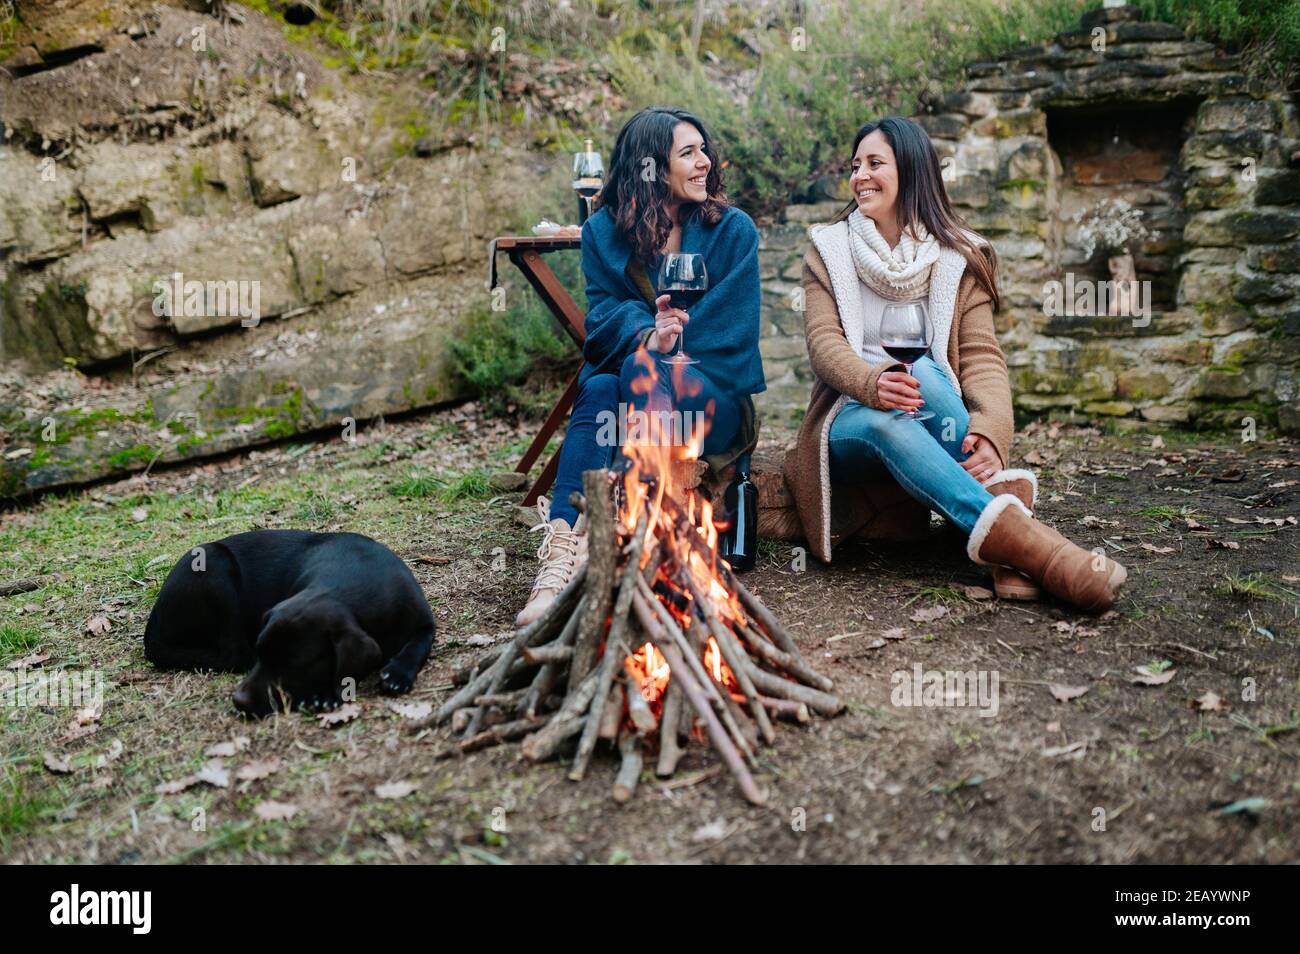 jeunes femmes heureuses qui parlent ensemble tout en buvant un verre de vin rouge. Les femelles se réchauffent à côté du feu avec le chien au repos. Feu de camp, activités de plein air Banque D'Images